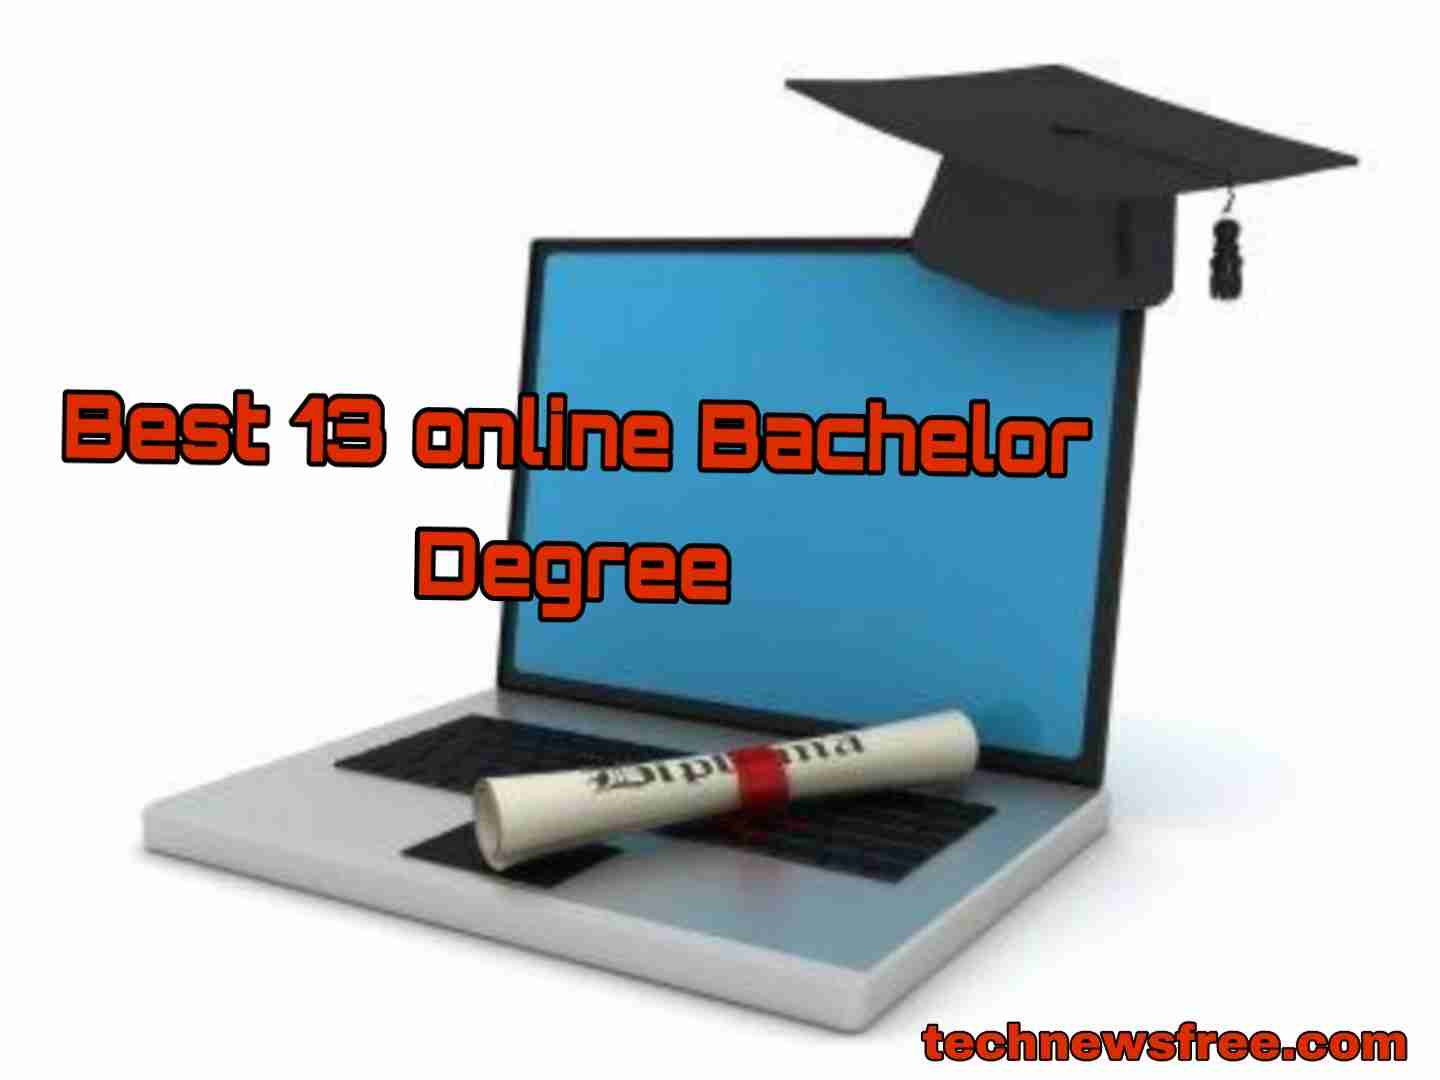 Best-13-online-Bachelor-Degree